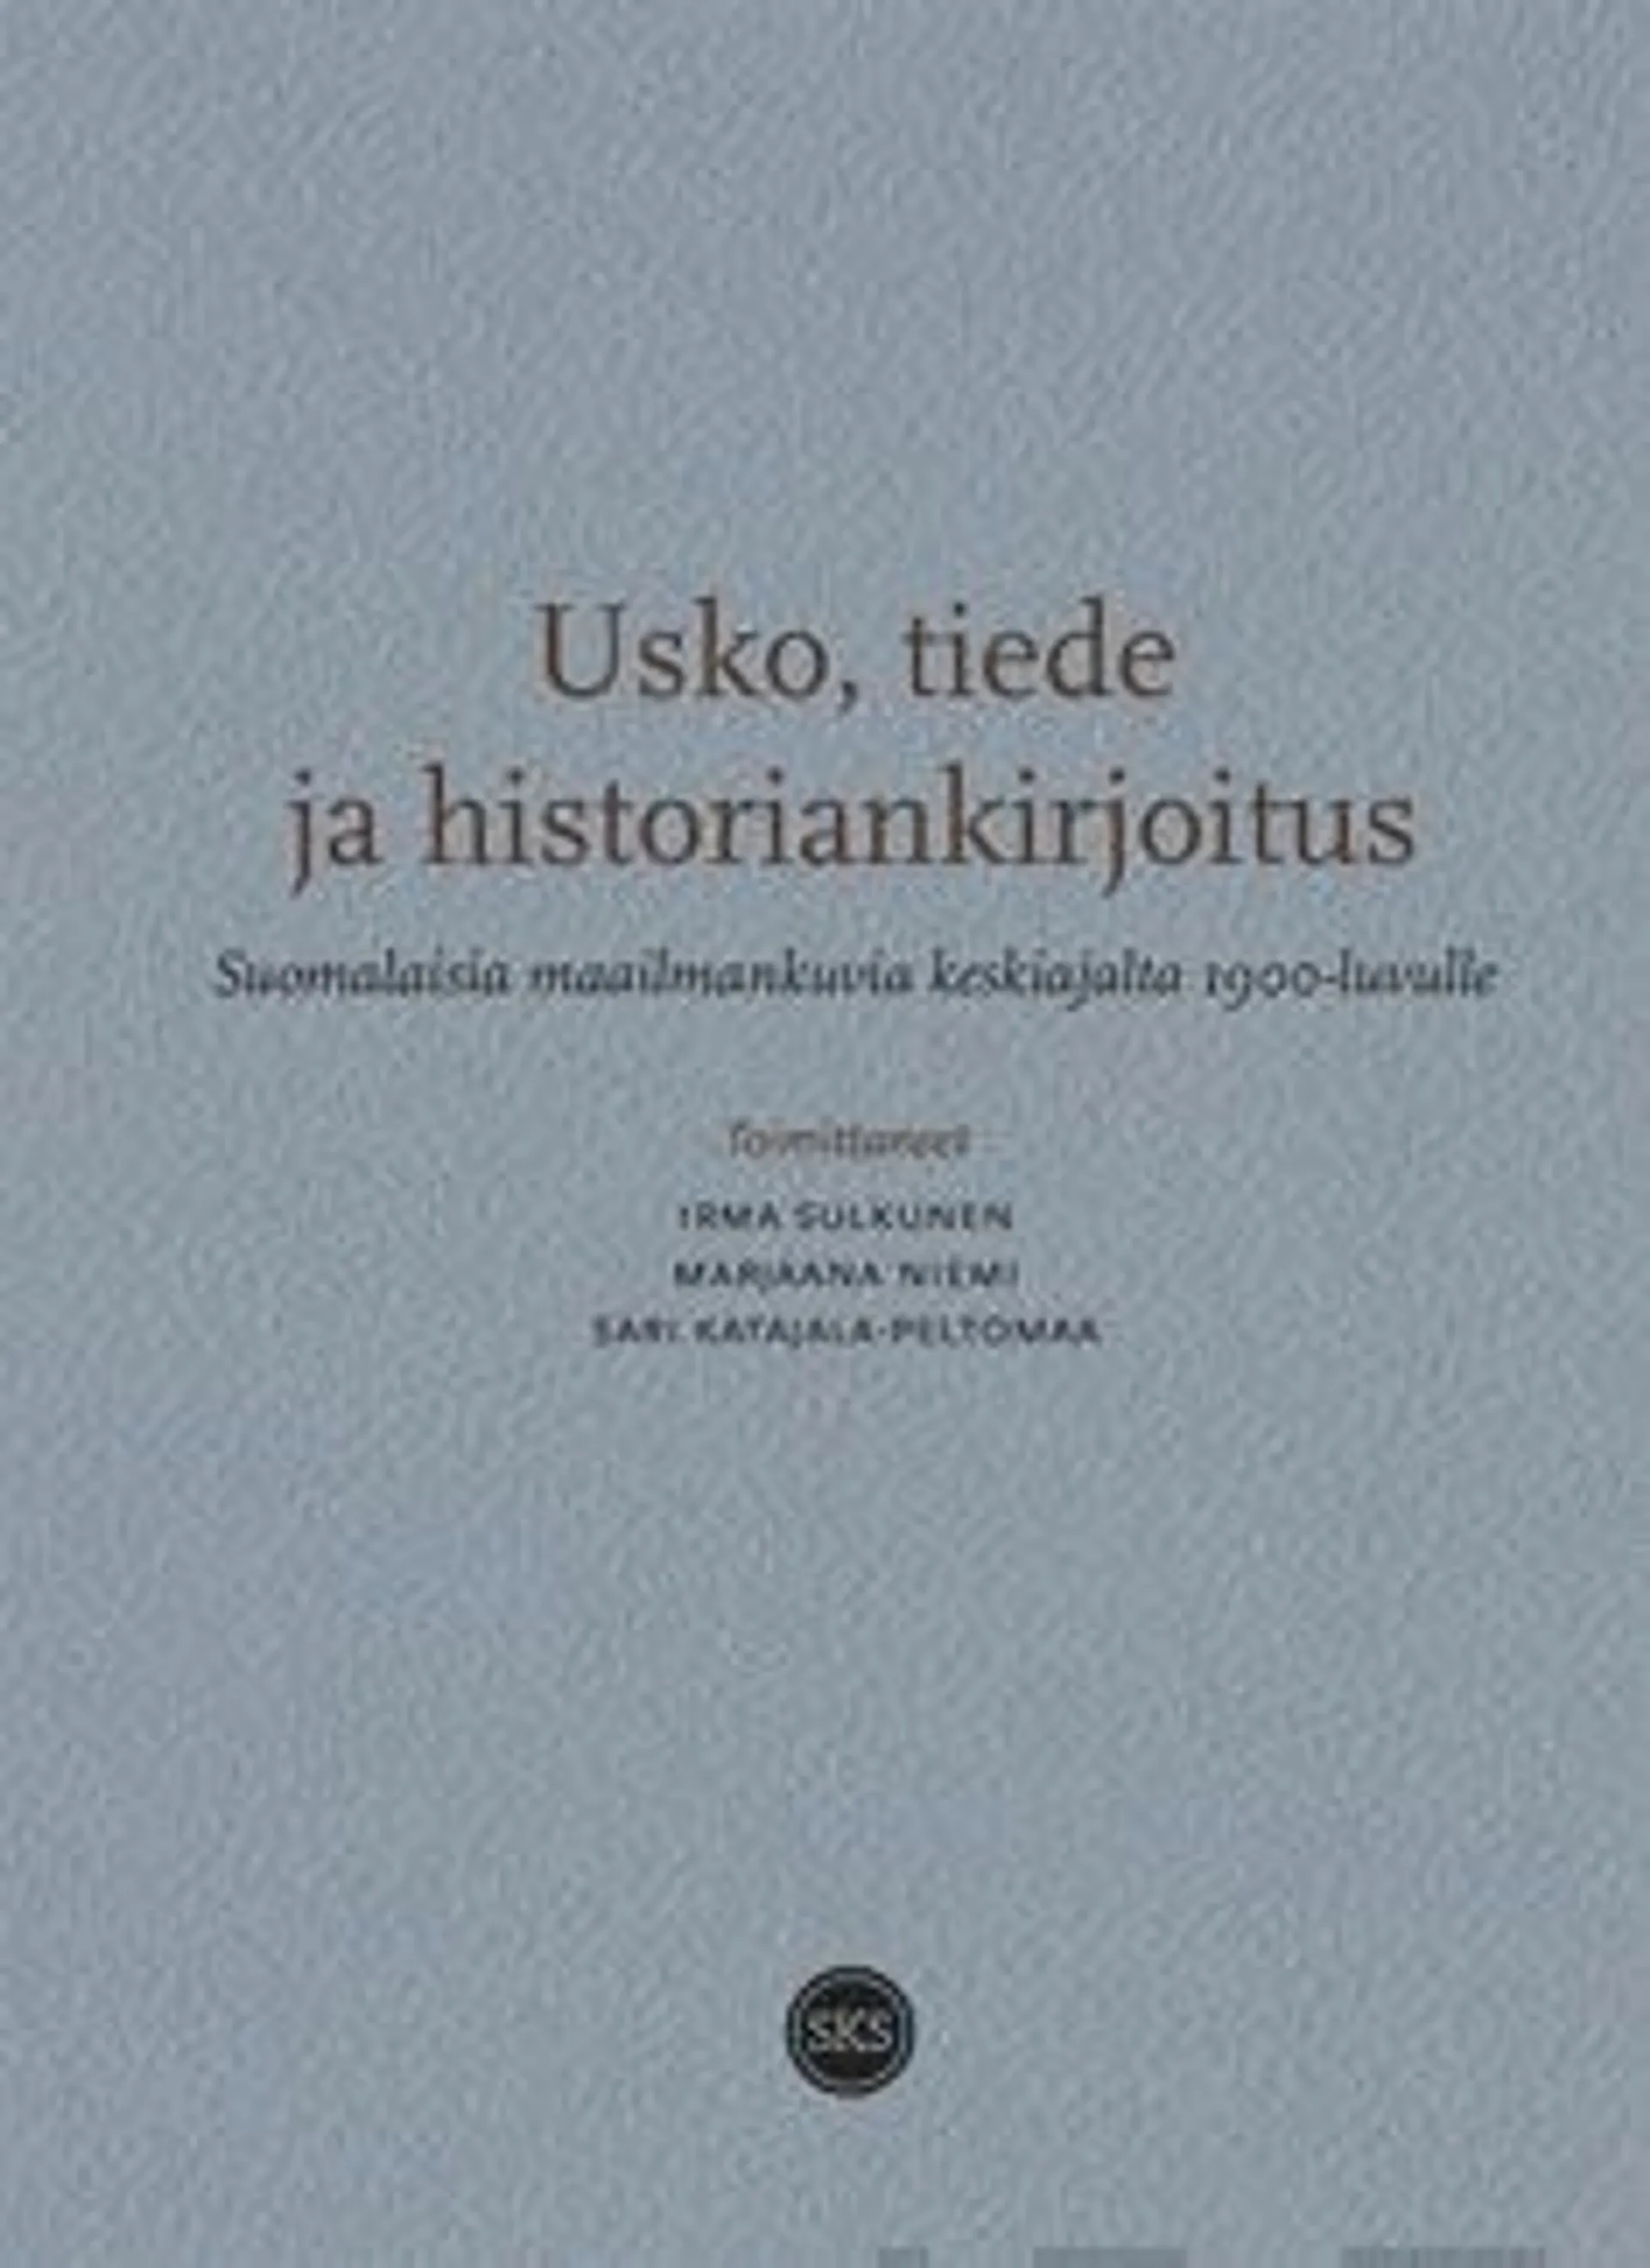 Usko, tiede ja historiankirjoitus - Suomalaisia maailmankuvia keskiajalta 1900-luvulle